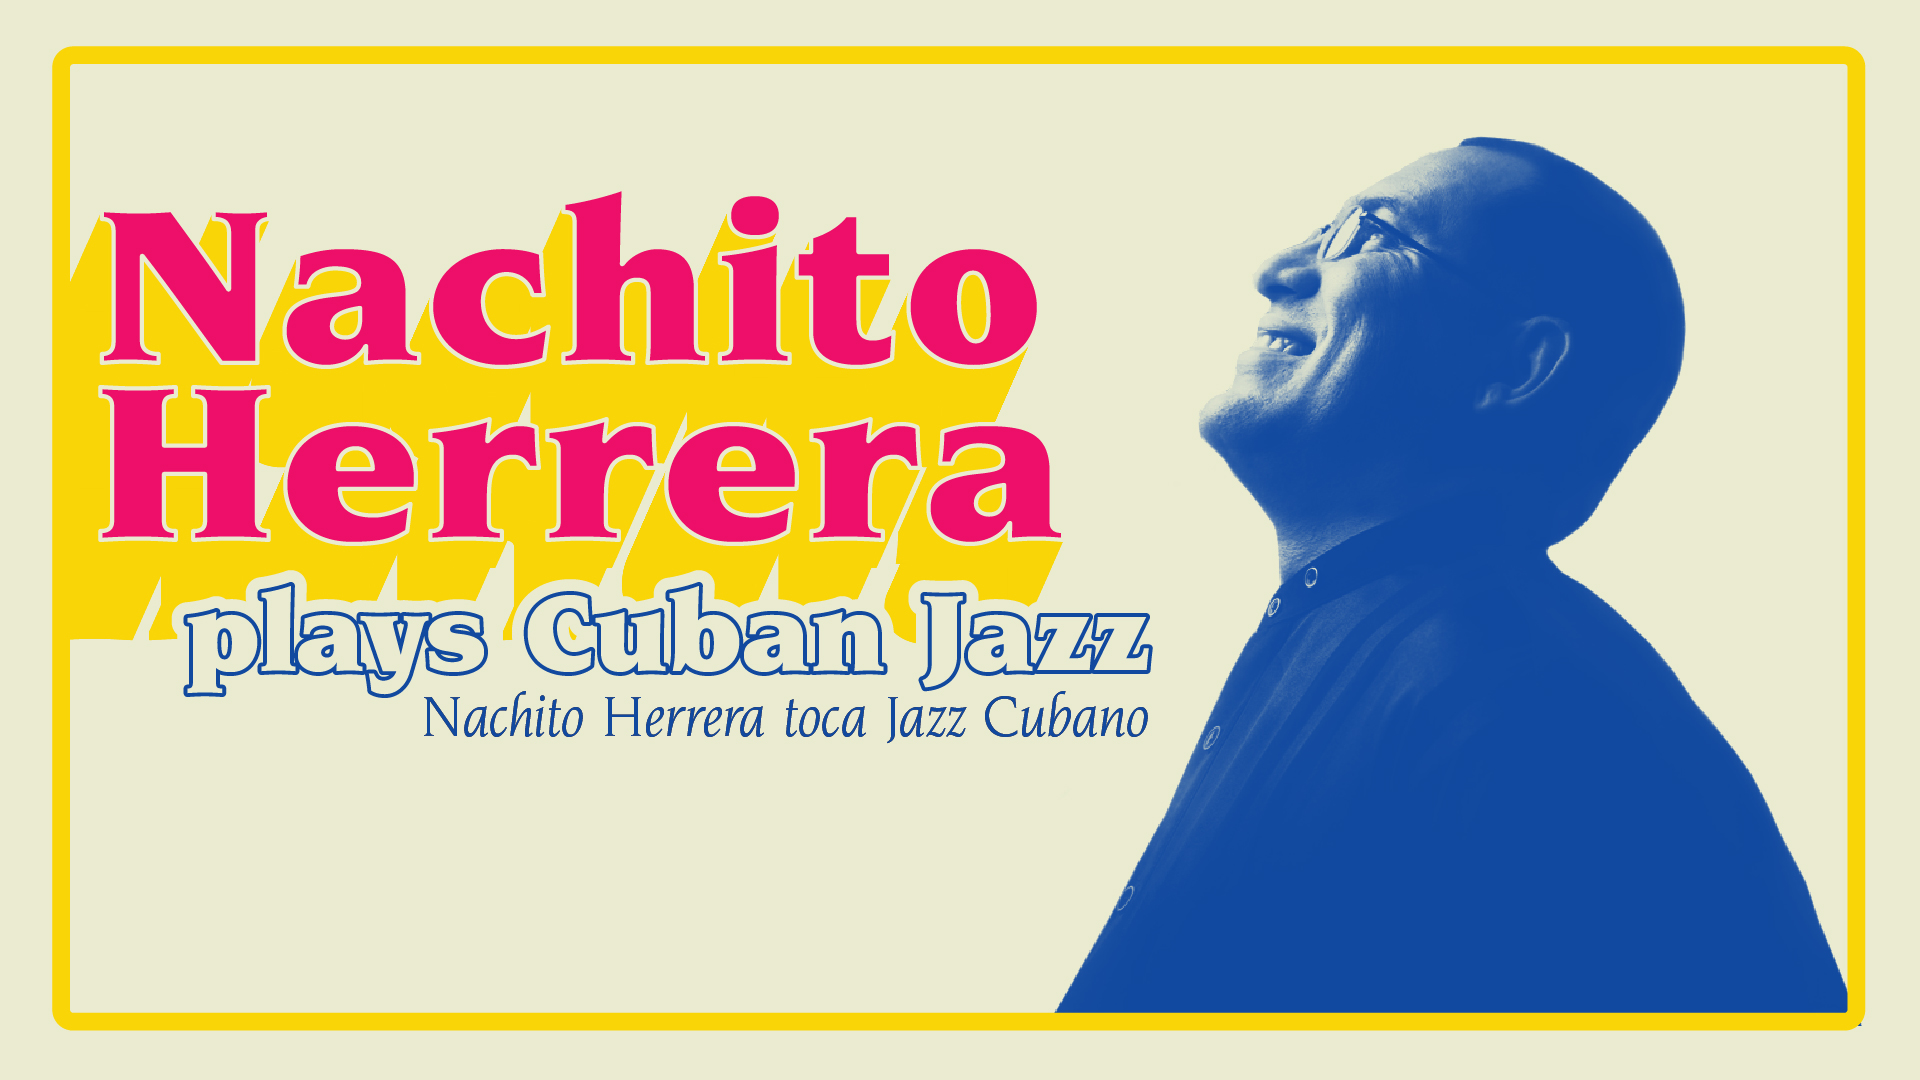 Nachito Herrera plays Cuban Jazz logo (Nachito Herrera toca Jazz Cubano)